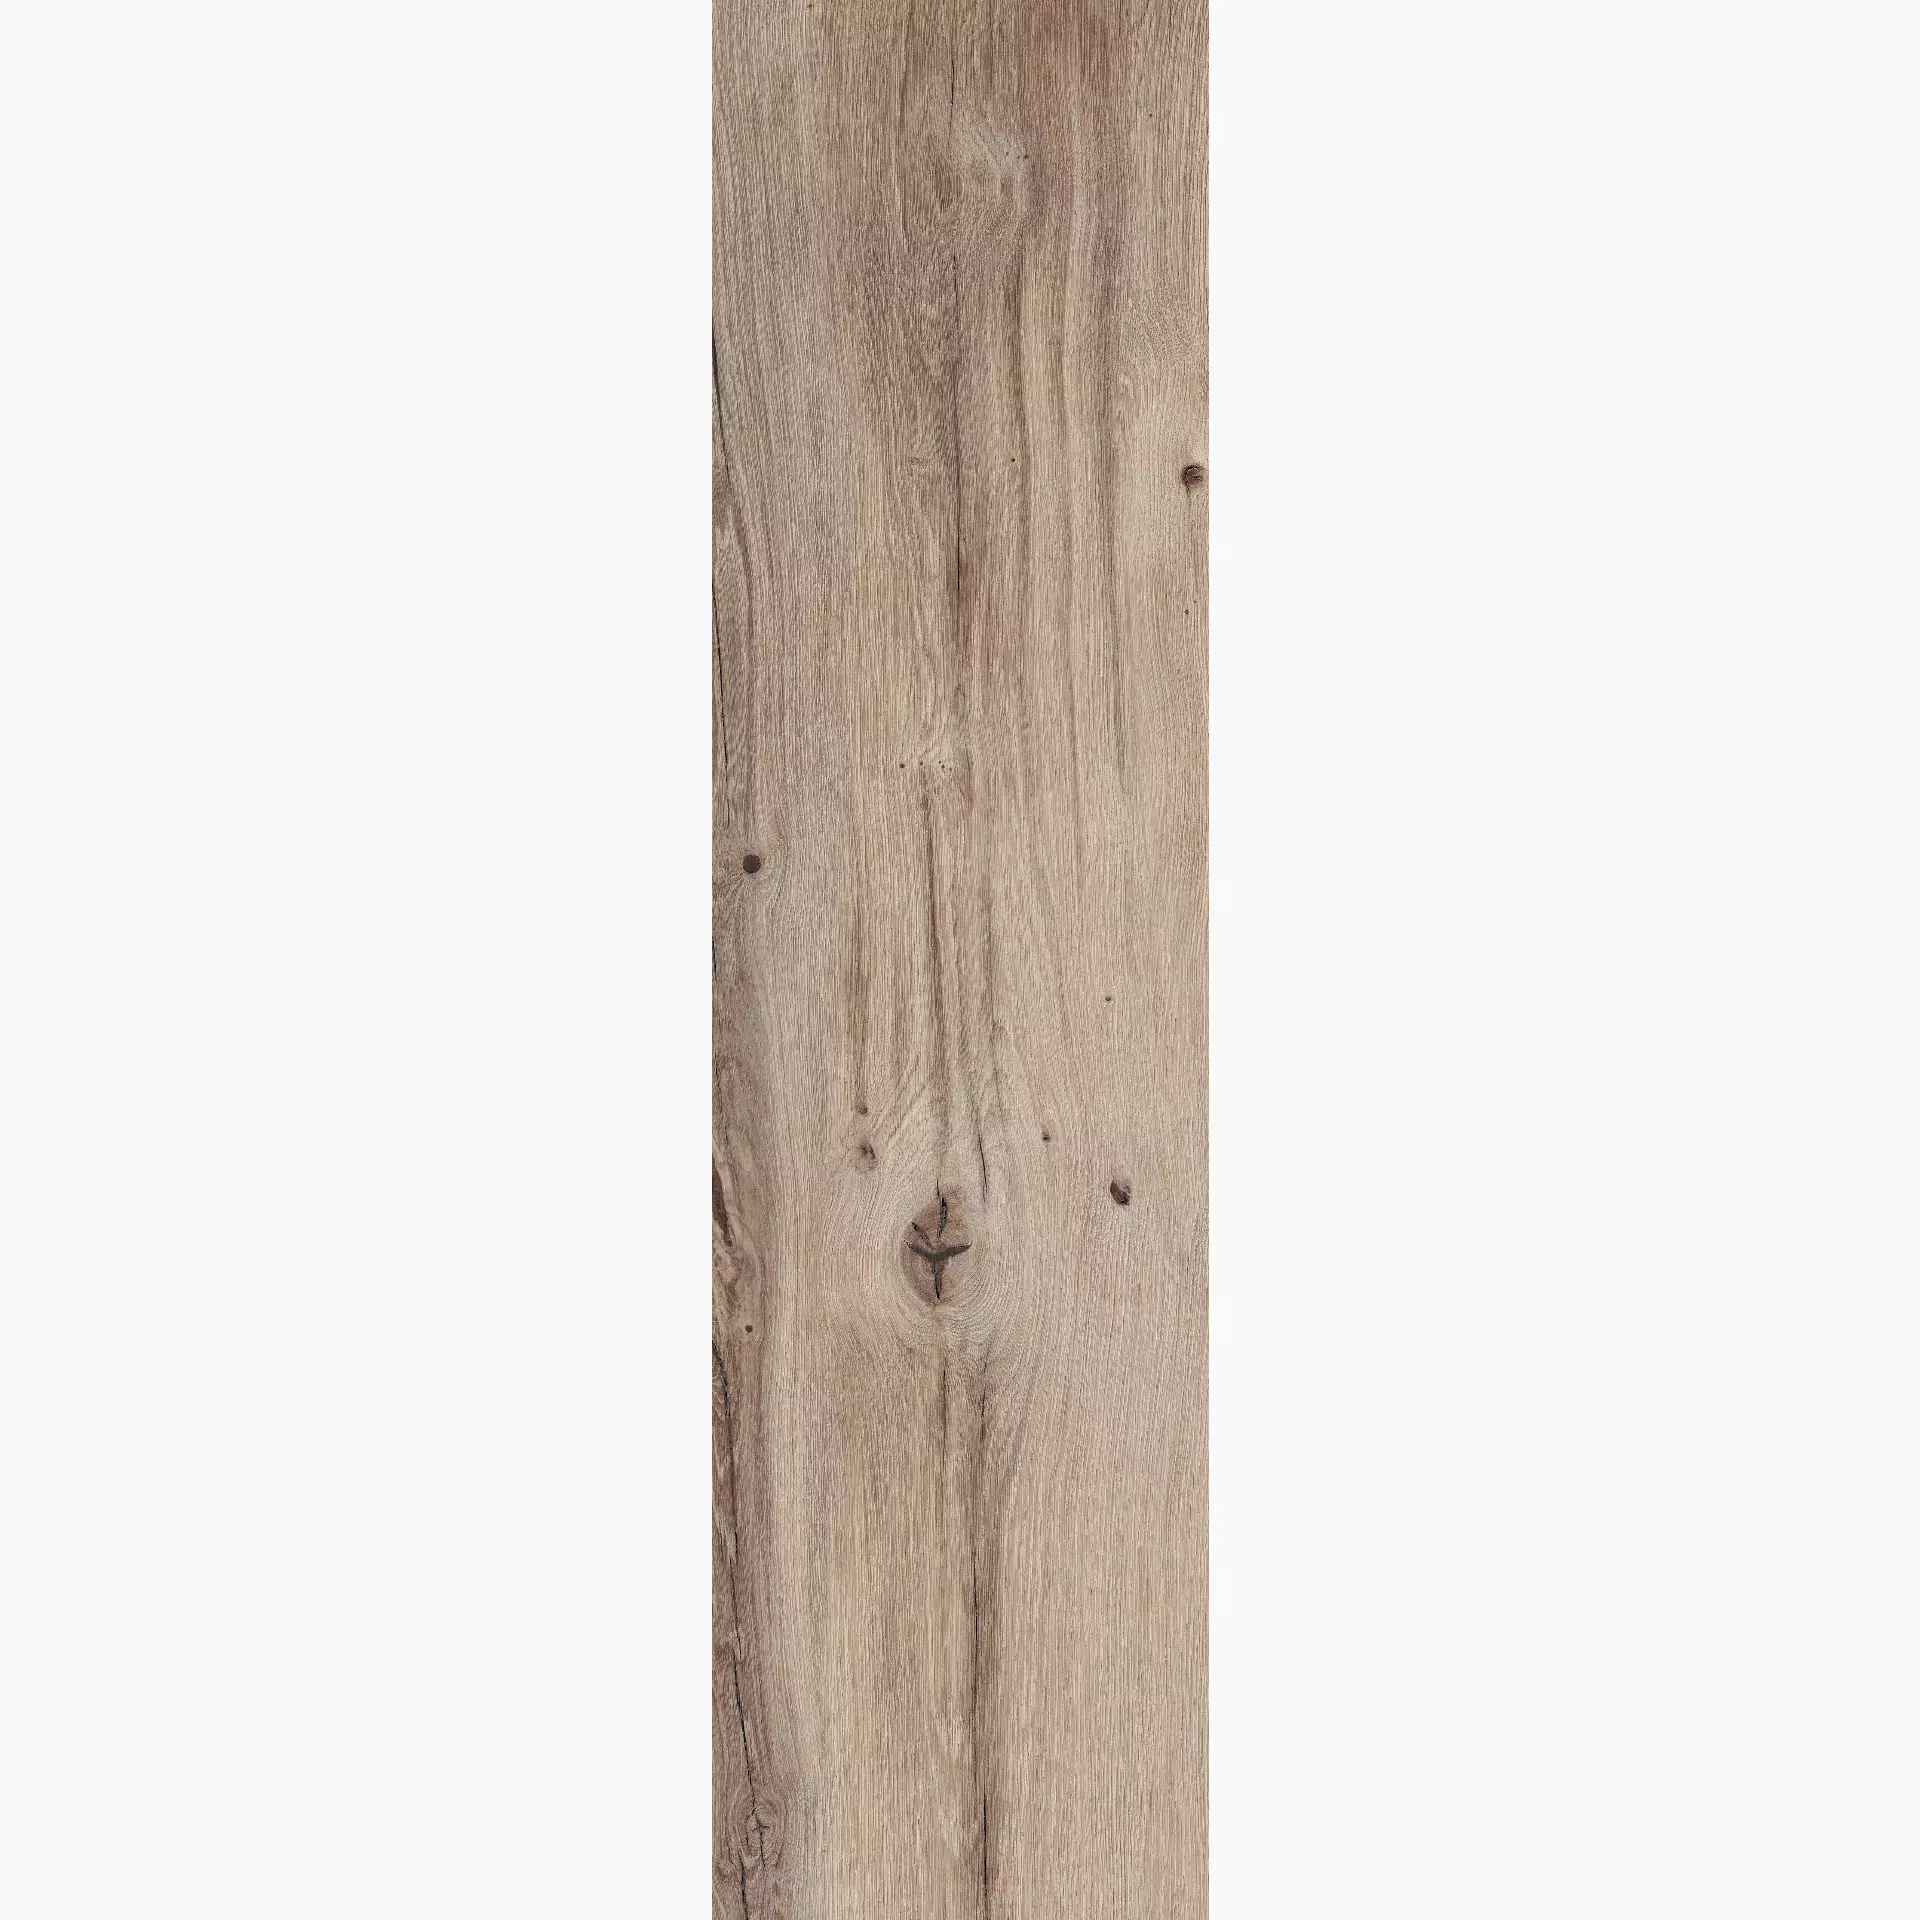 Flaviker X20 Beige Outdoor Nordik Wood PF60004815 30x120cm rectified 20mm